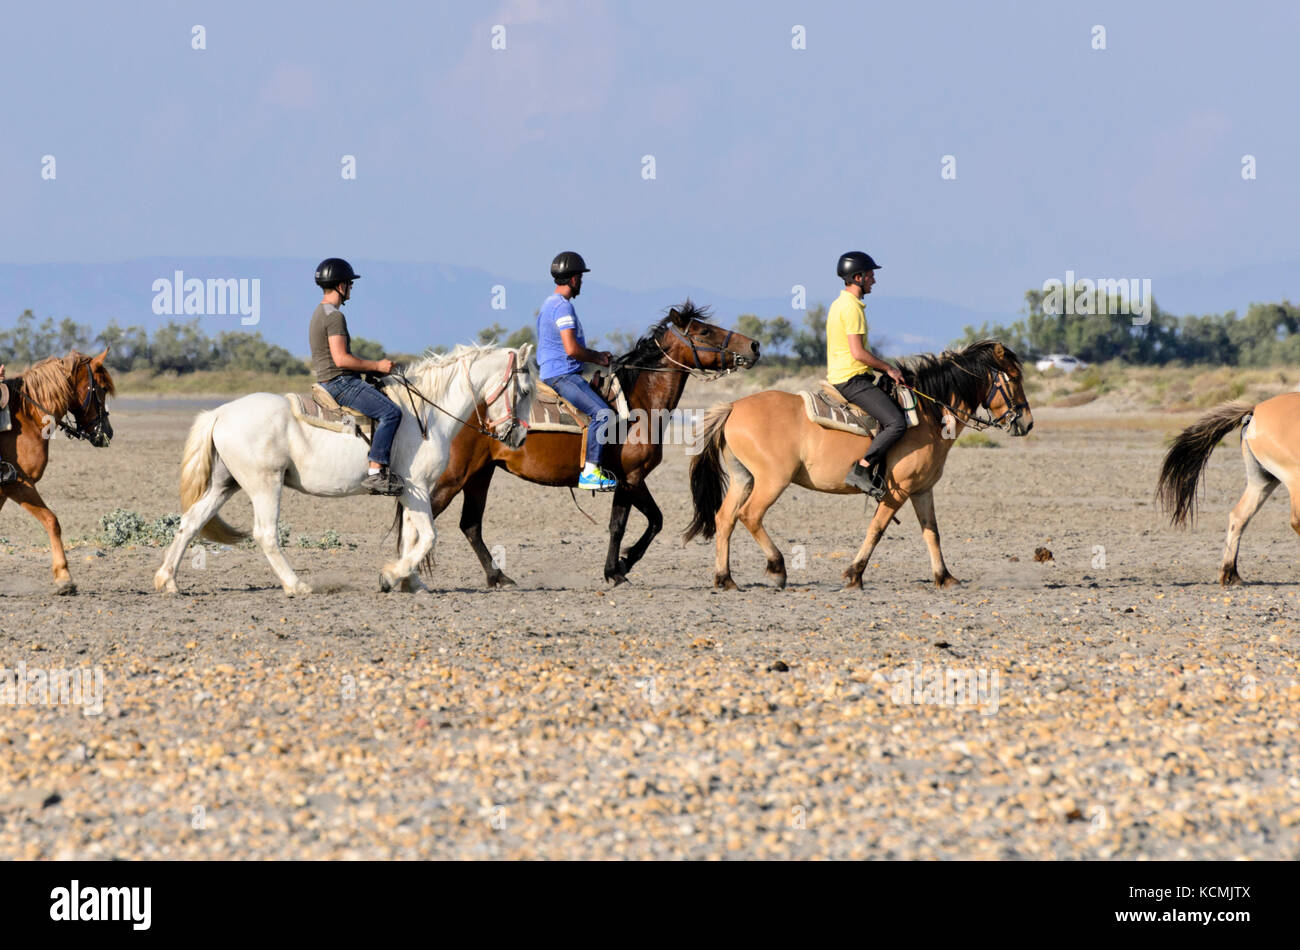 Cavaliers sur des chevaux blancs et bruns, camargue, france Banque D'Images